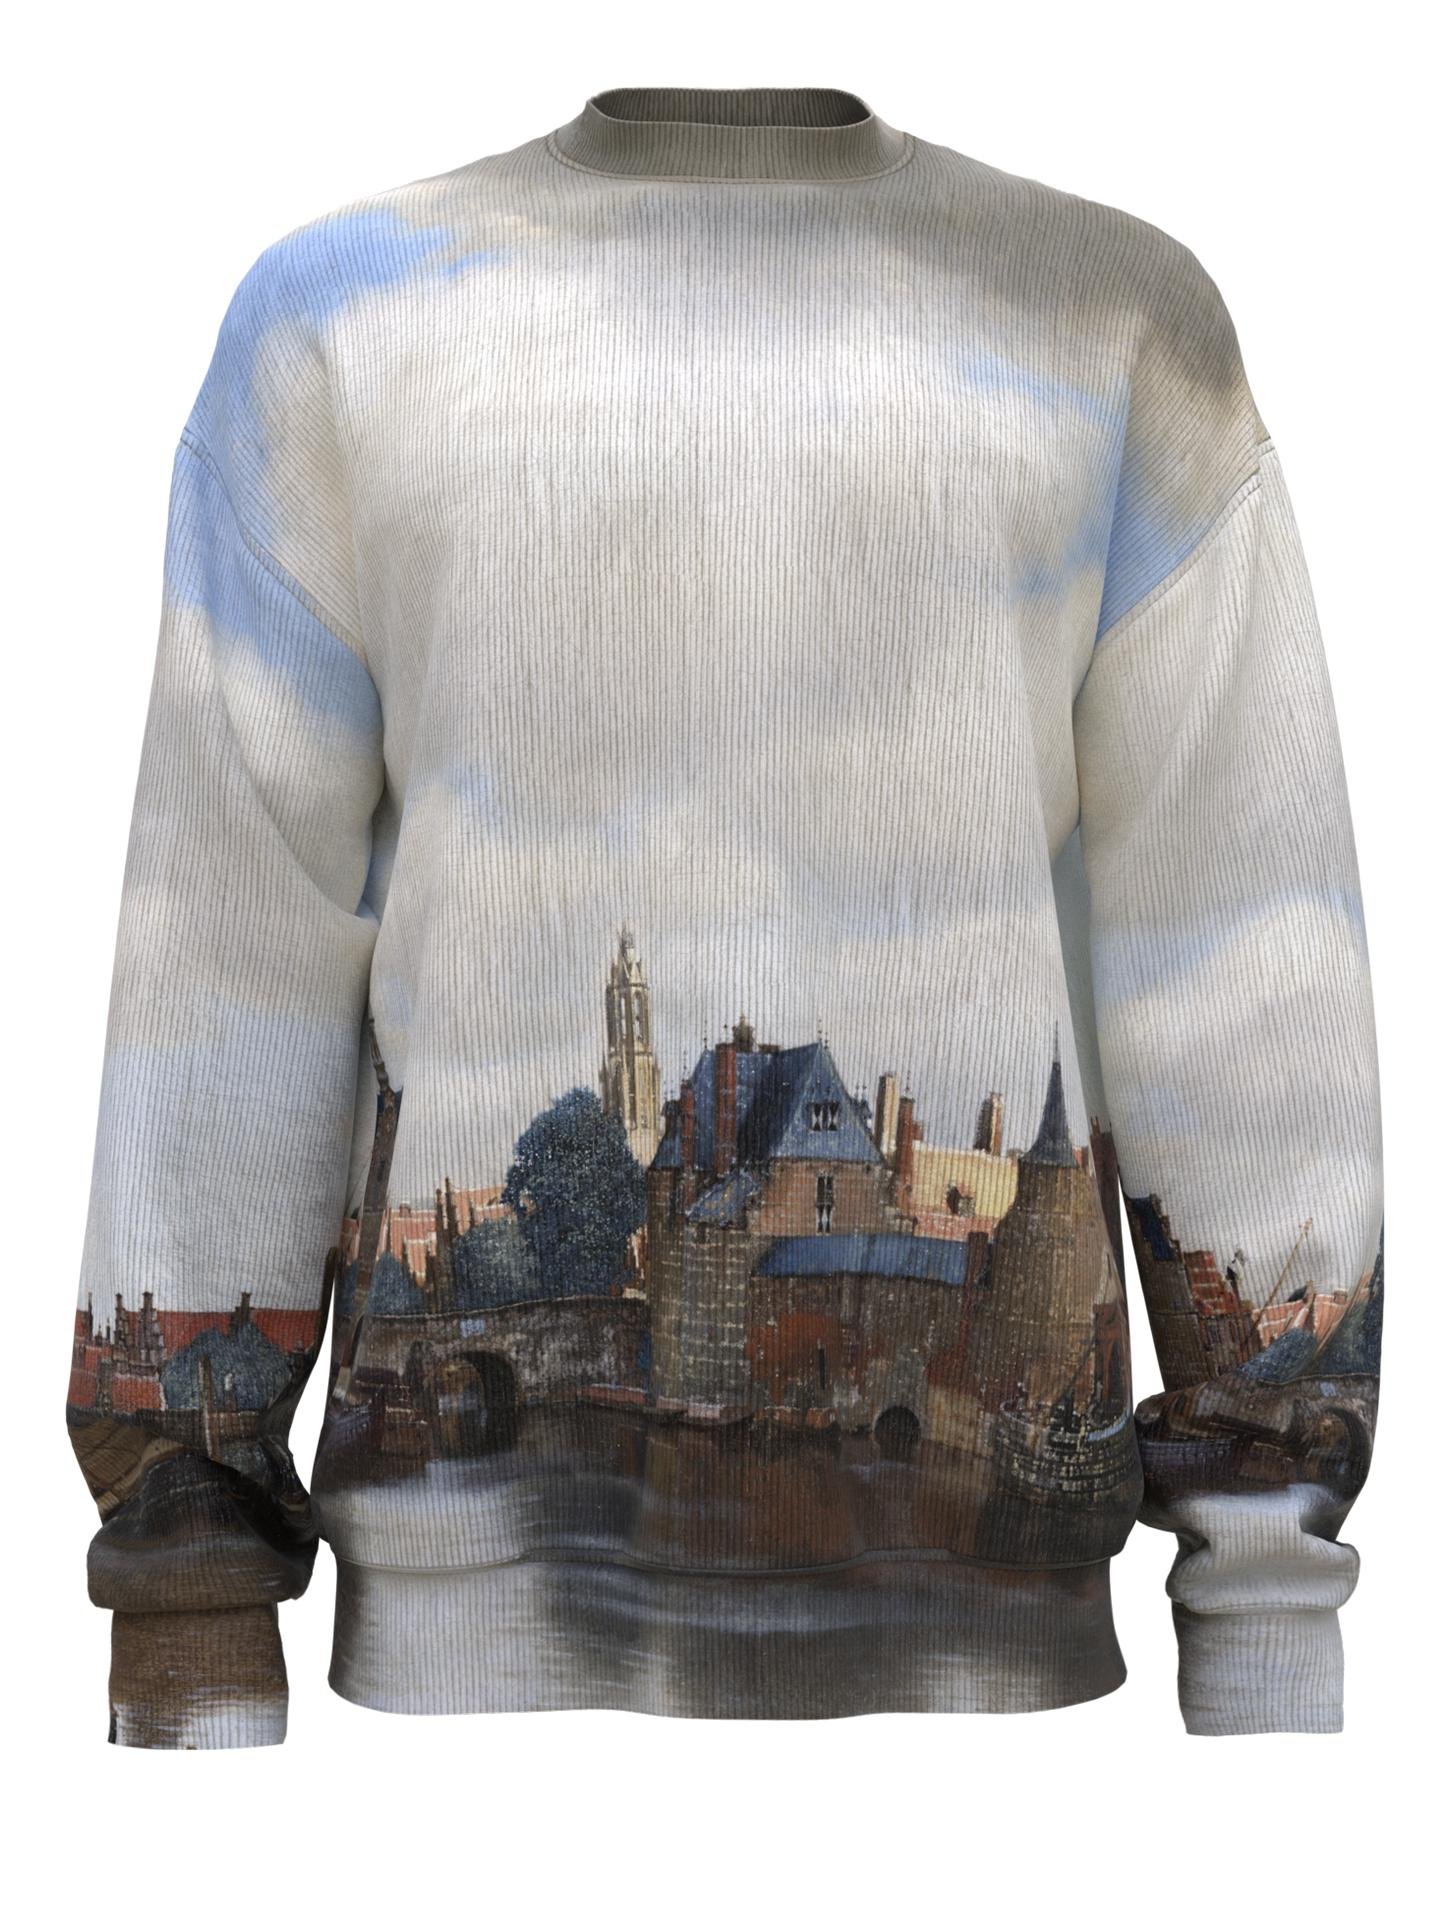 Sweatshirt - View o f Delft by DRESSX